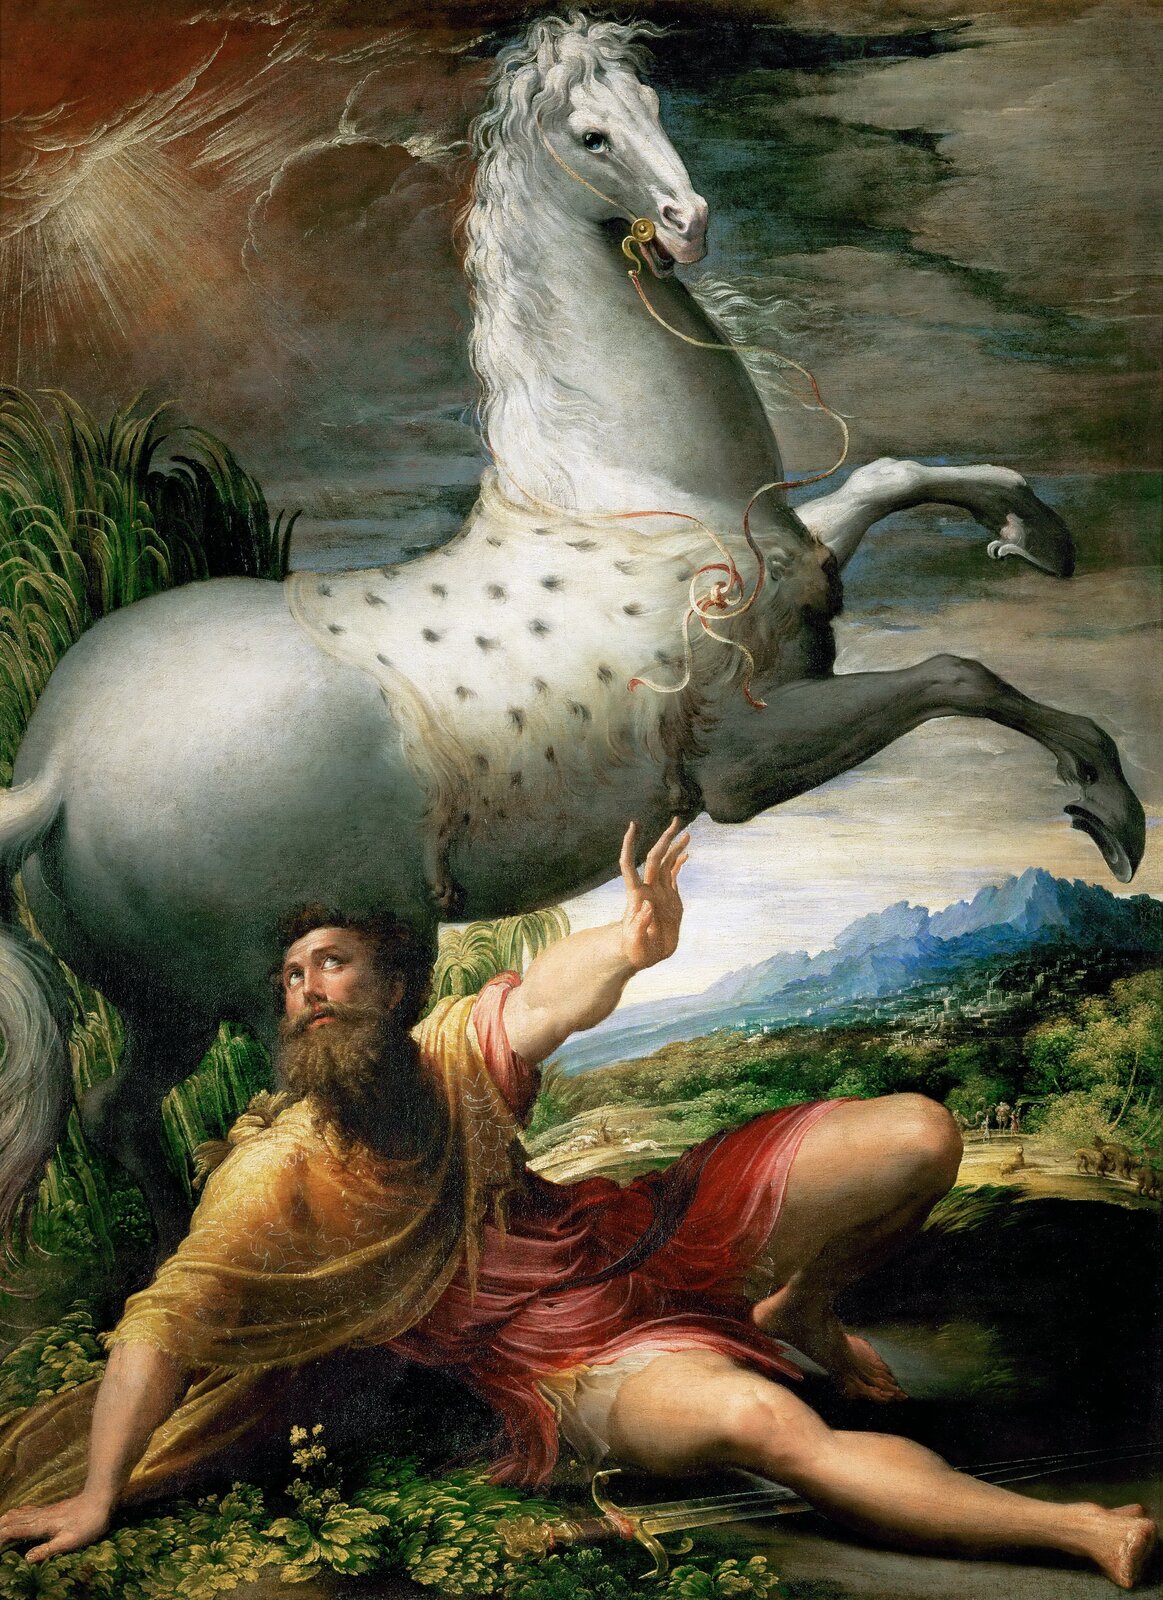 Nawrócenie św. Pawła Źródło: Parmigianino, Nawrócenie św. Pawła, olej na płótnie, Kunsthistorisches Museum, domena publiczna.